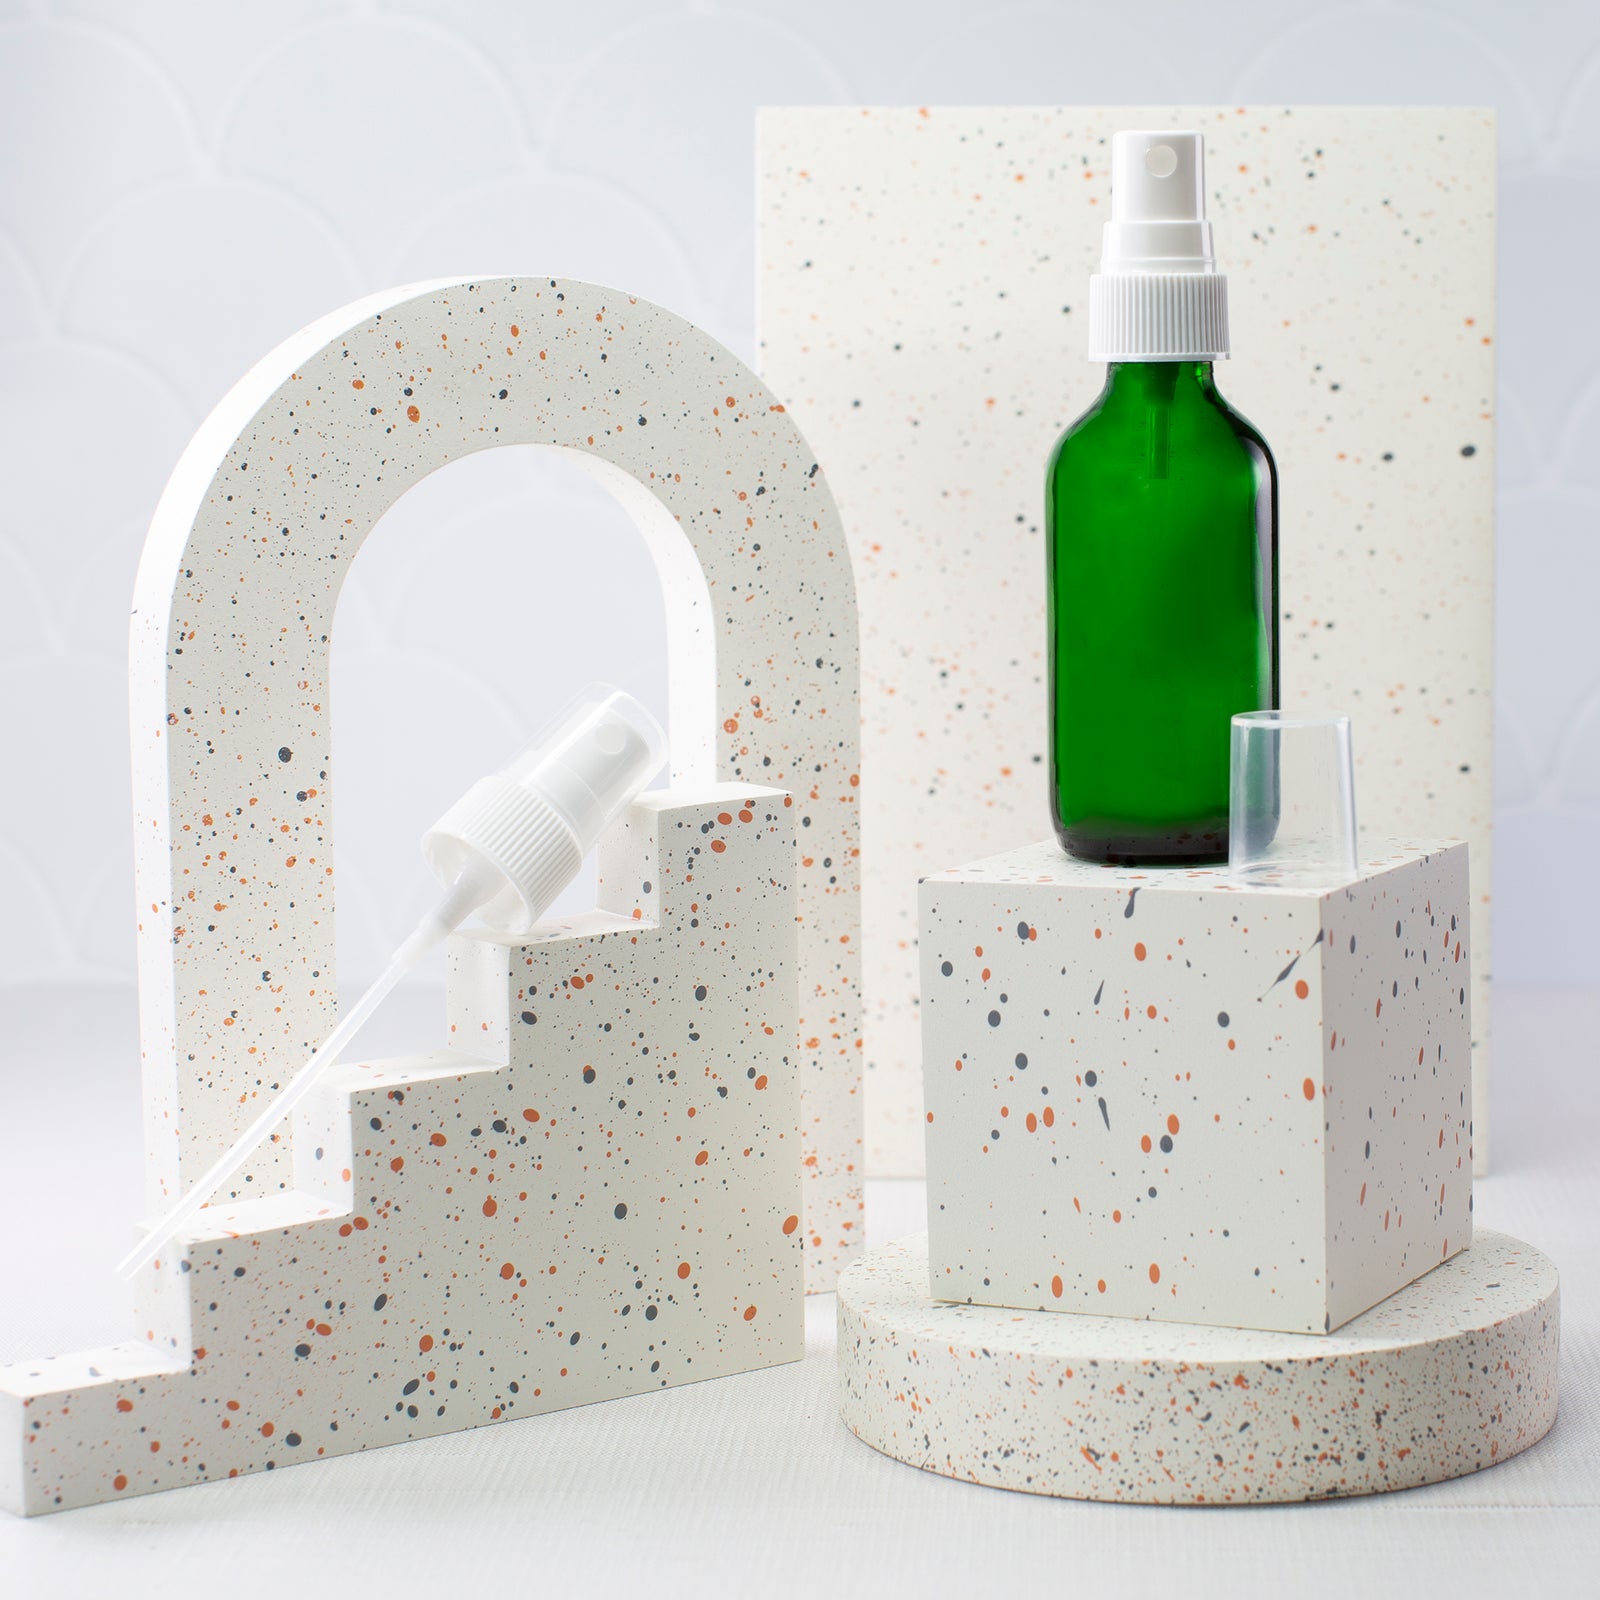 2 oz Green Glass Bottle with 20-400 White Fine Mist Sprayer